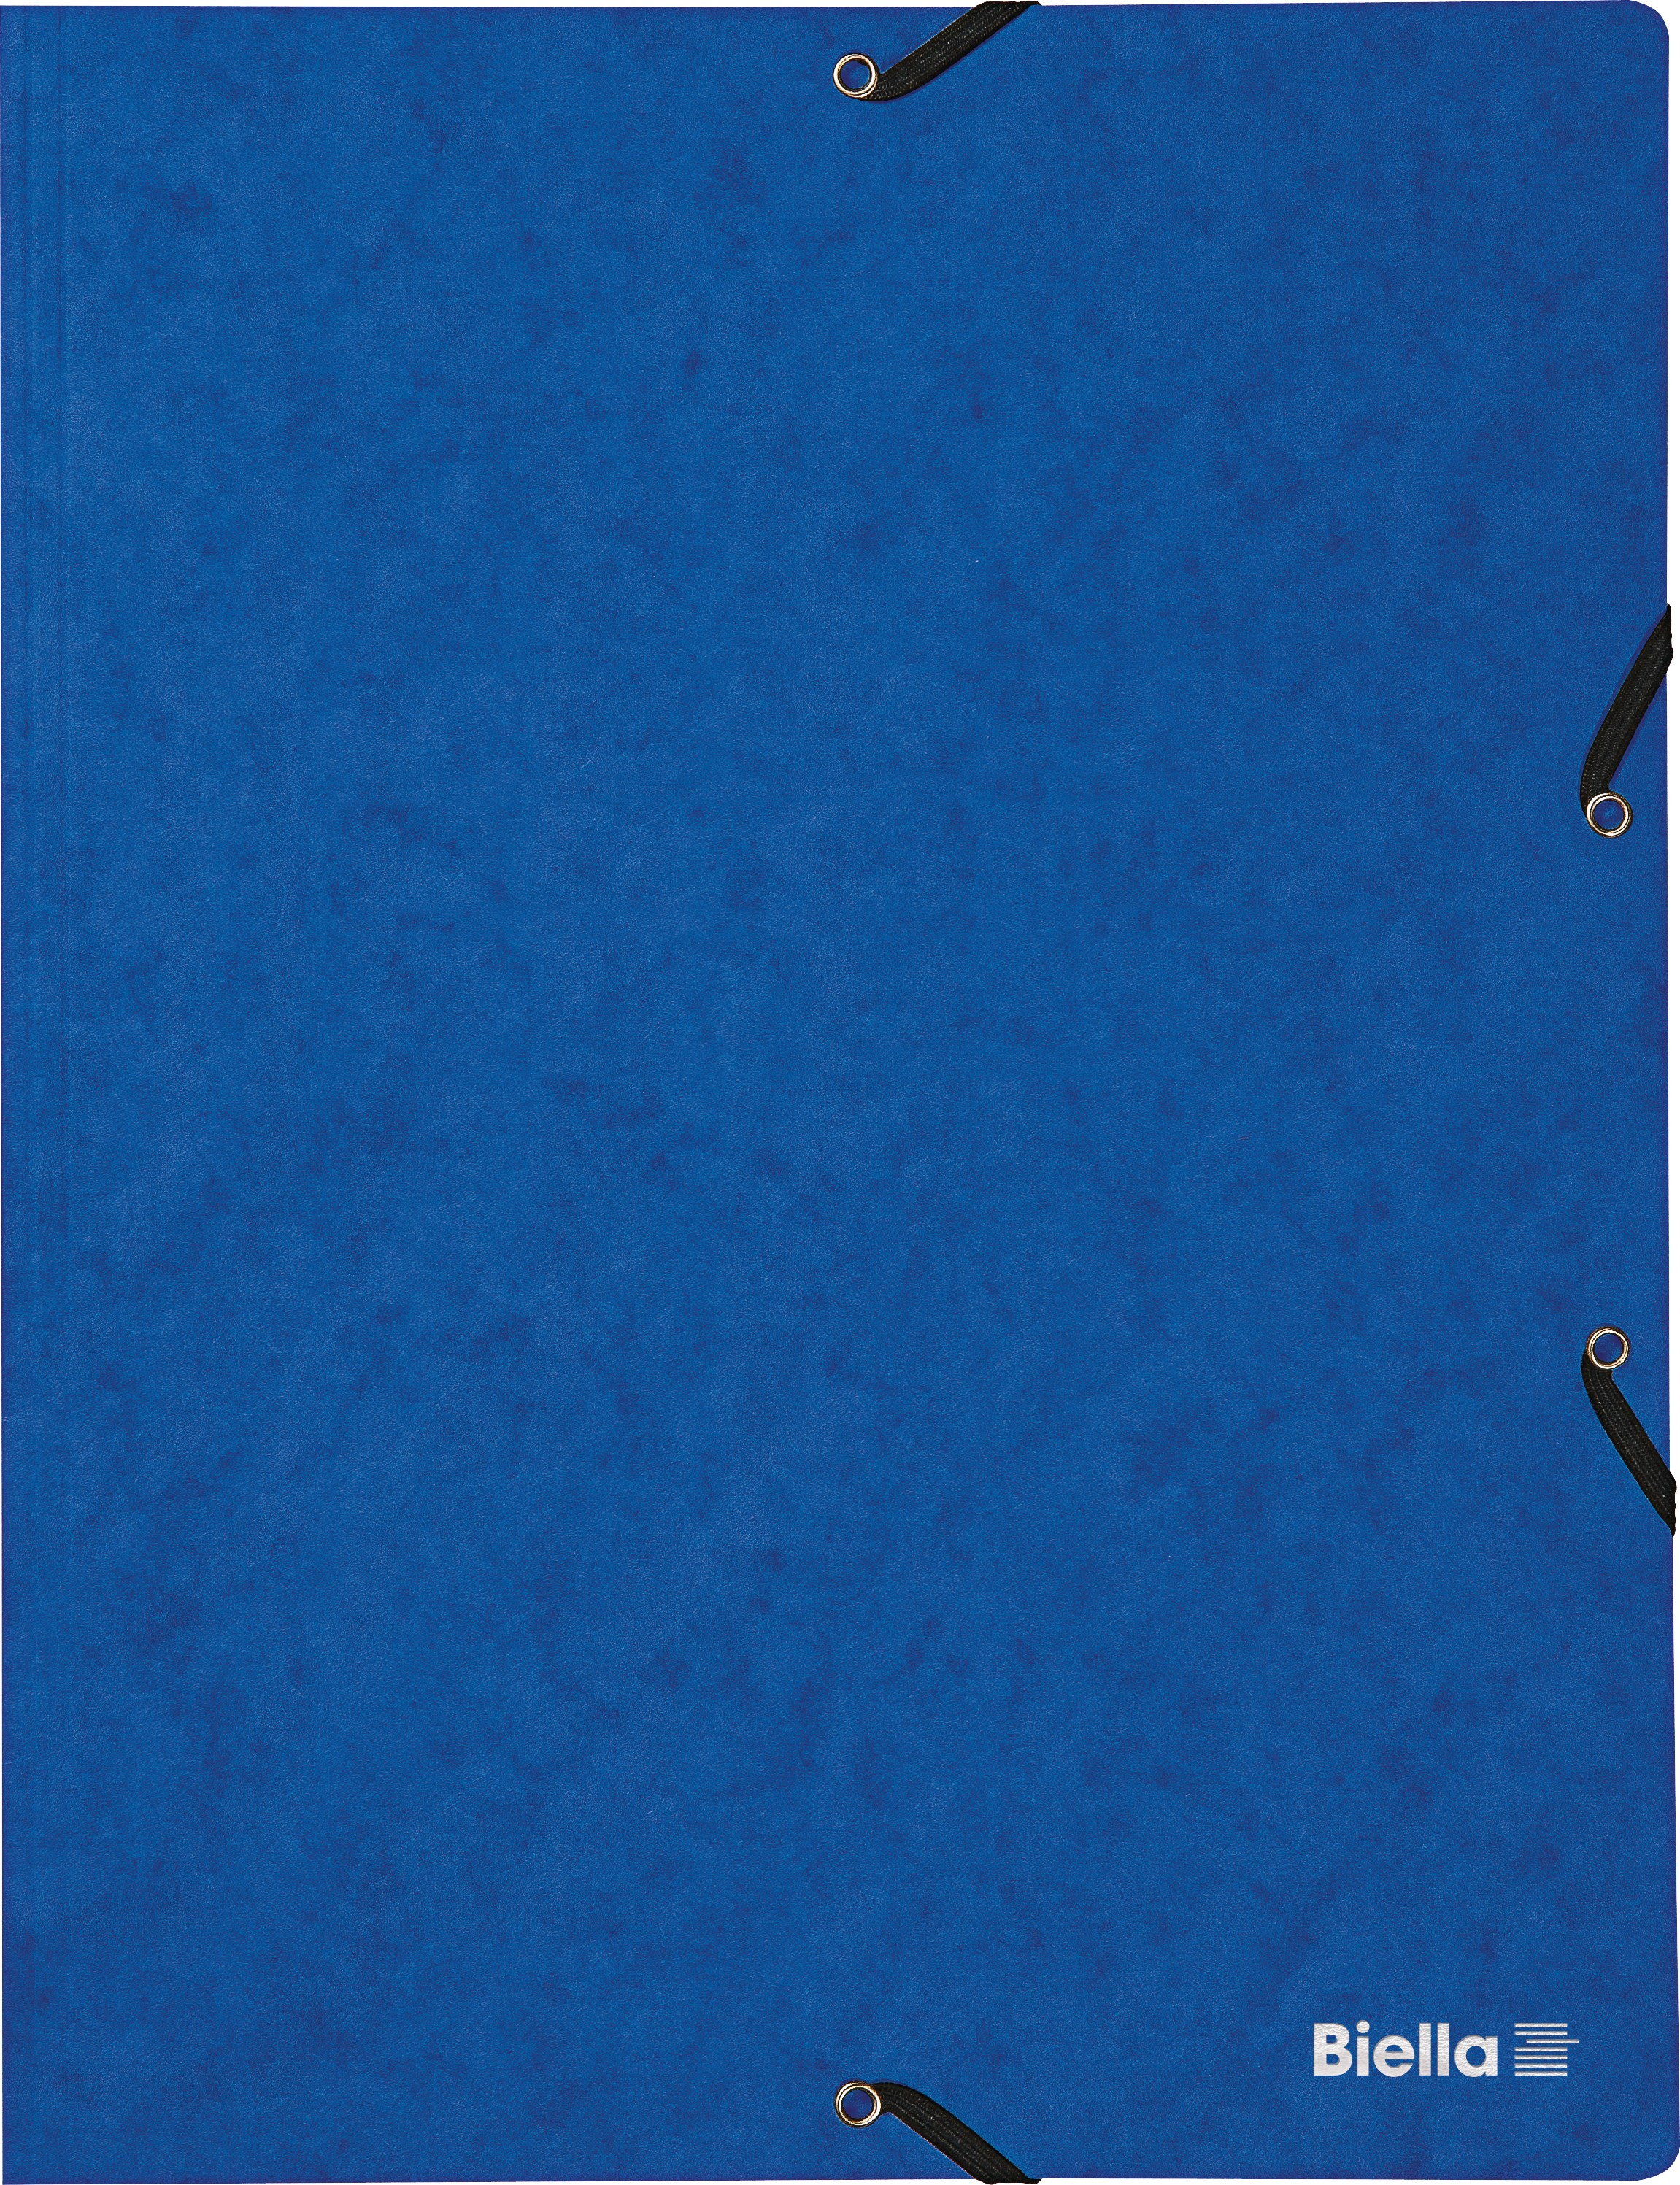 BIELLA Dossier ferm. Élastique A4 17840105U bleu, 355gm2 200 flls. bleu, 355gm2 200 flls.